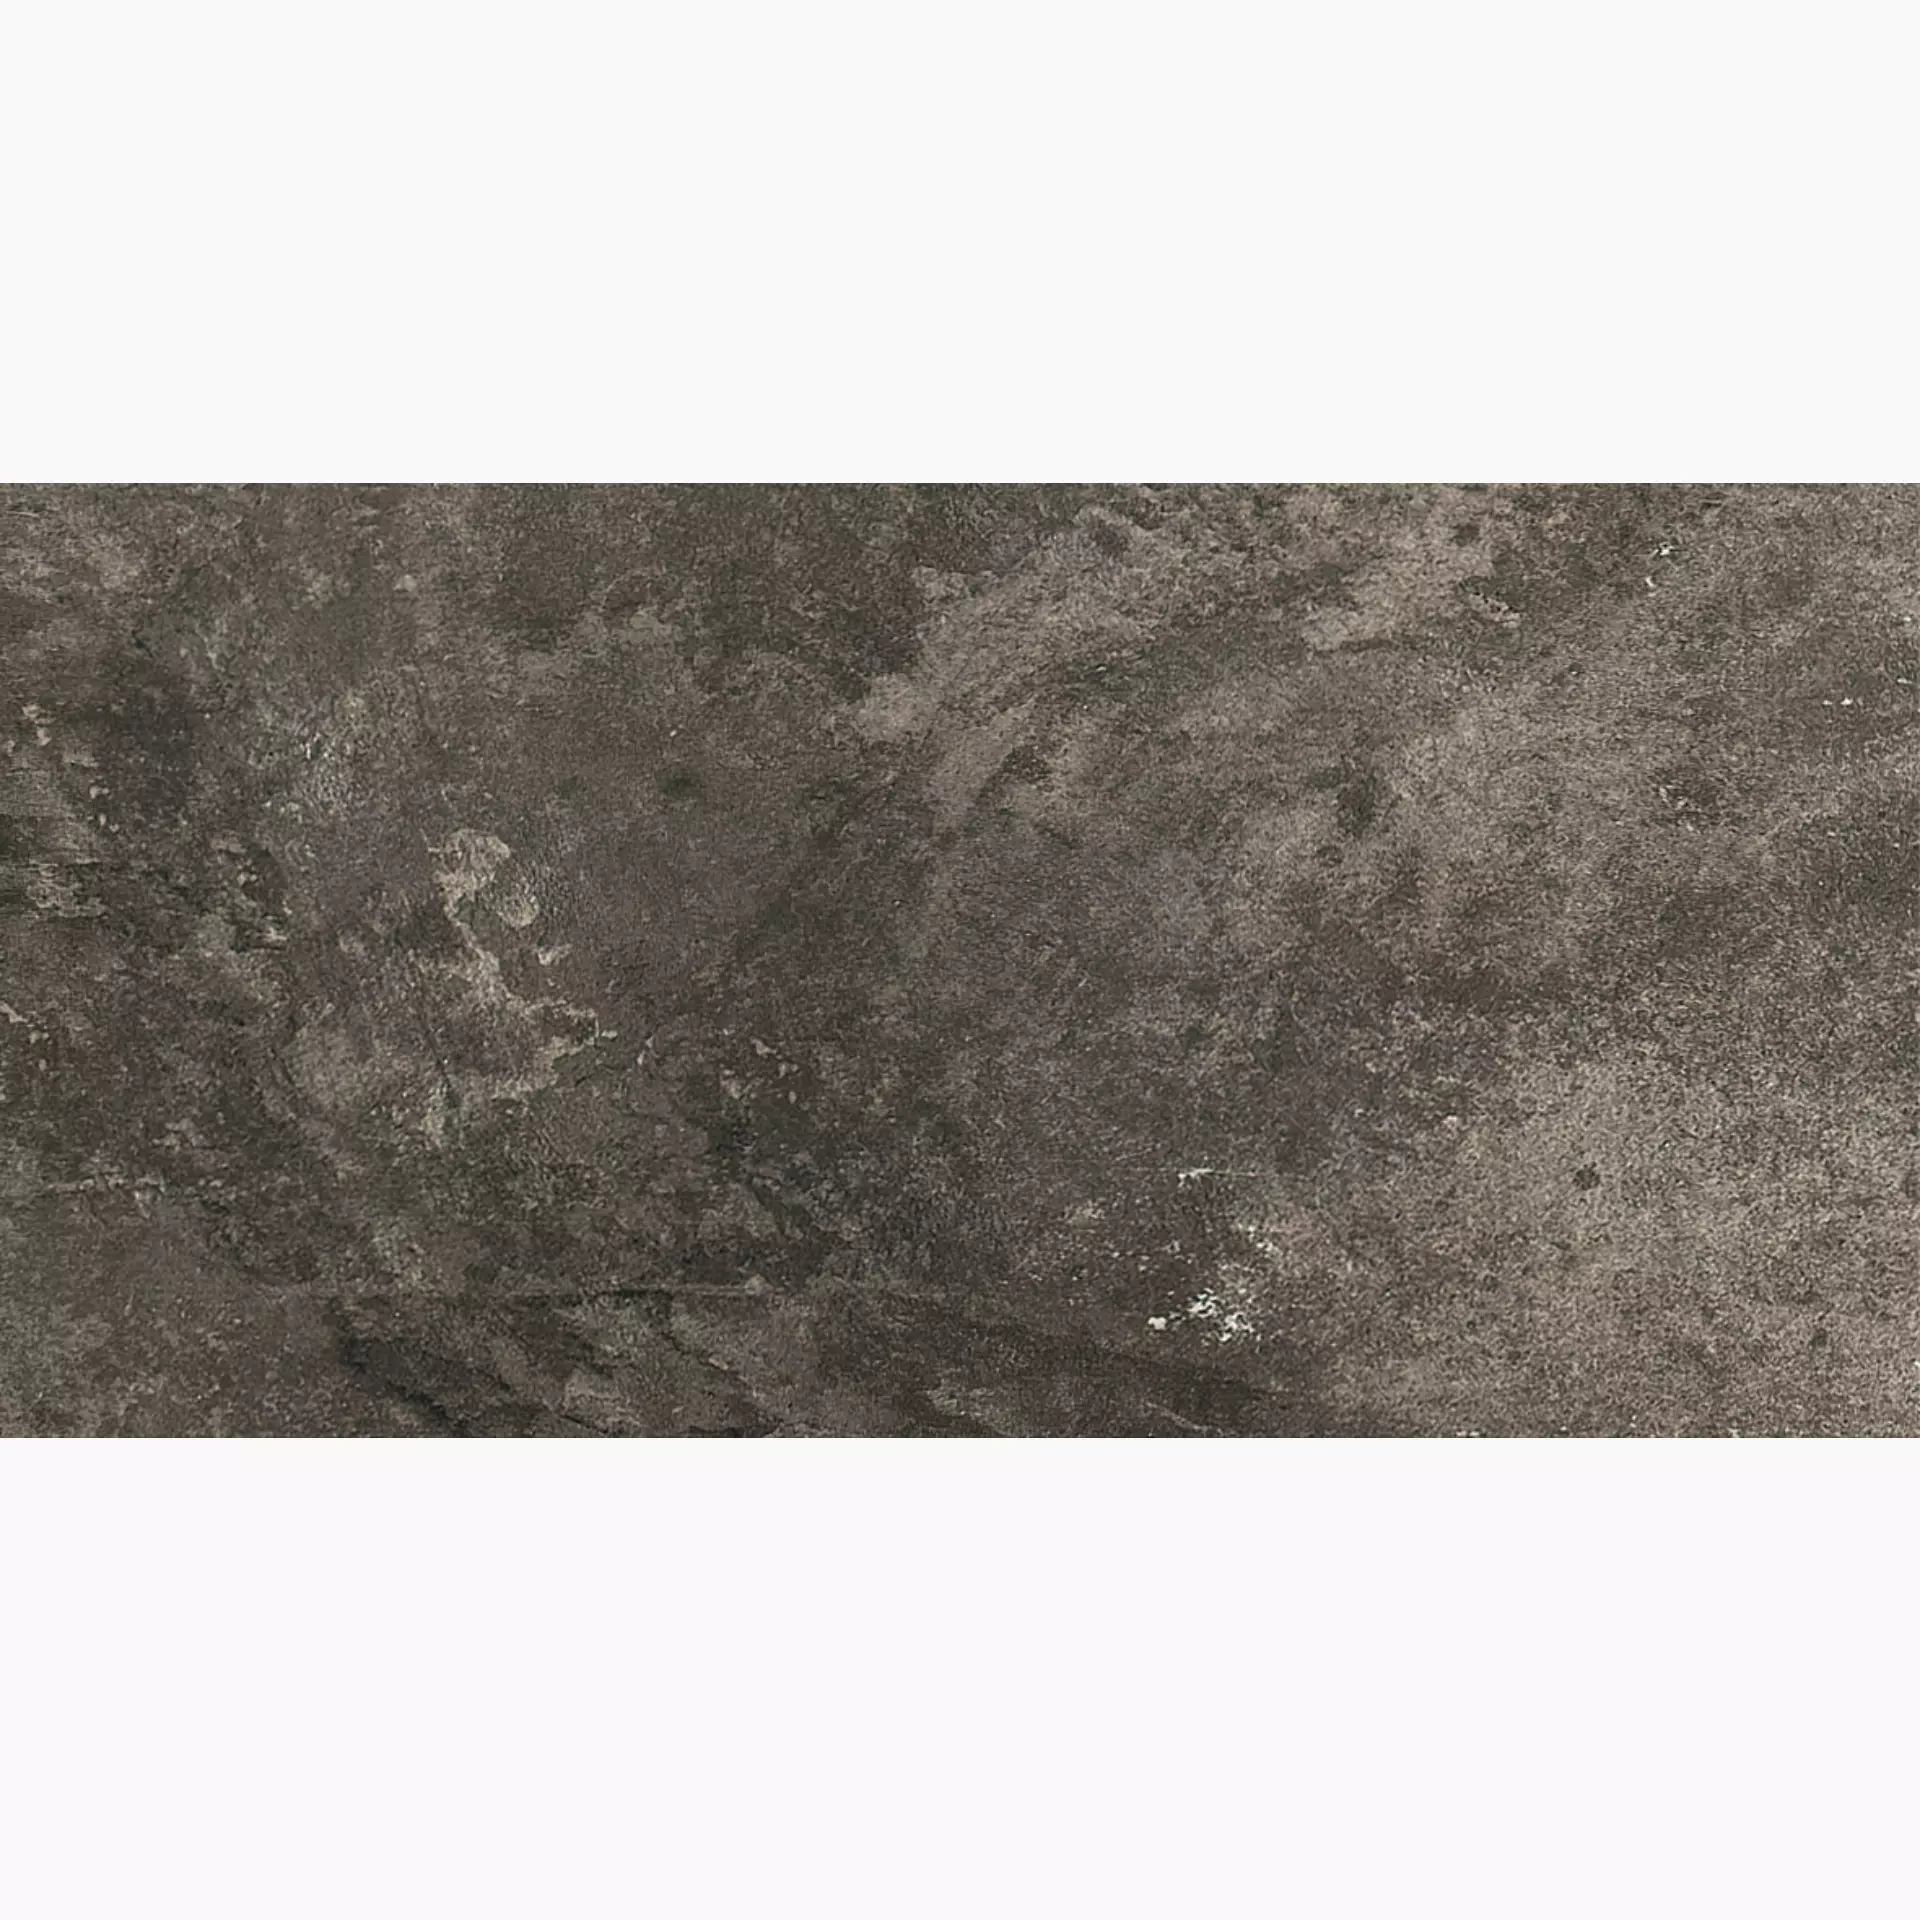 Florim La Roche Mud Anticato – Naturale Mud 742041 antiquiert natur 40x80cm rektifiziert 9mm